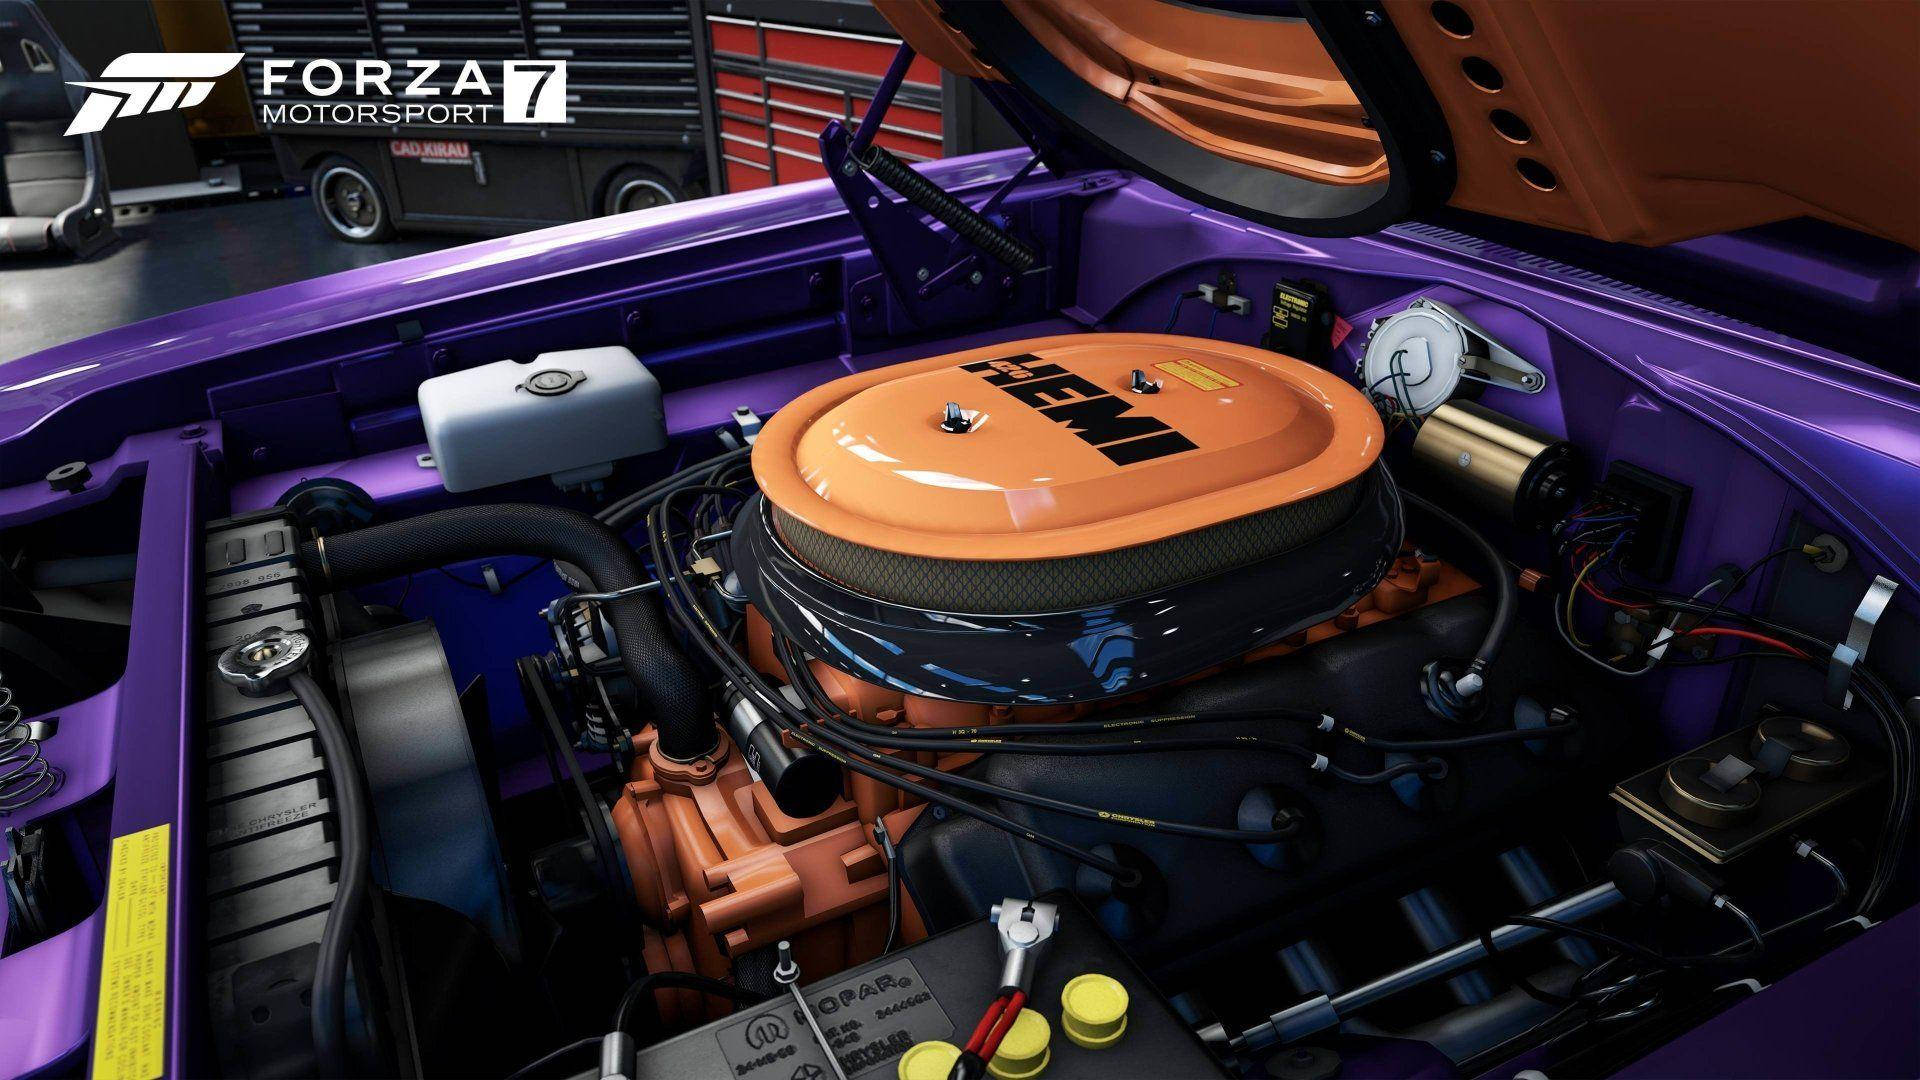 Forza7 Bilmotor Wallpaper